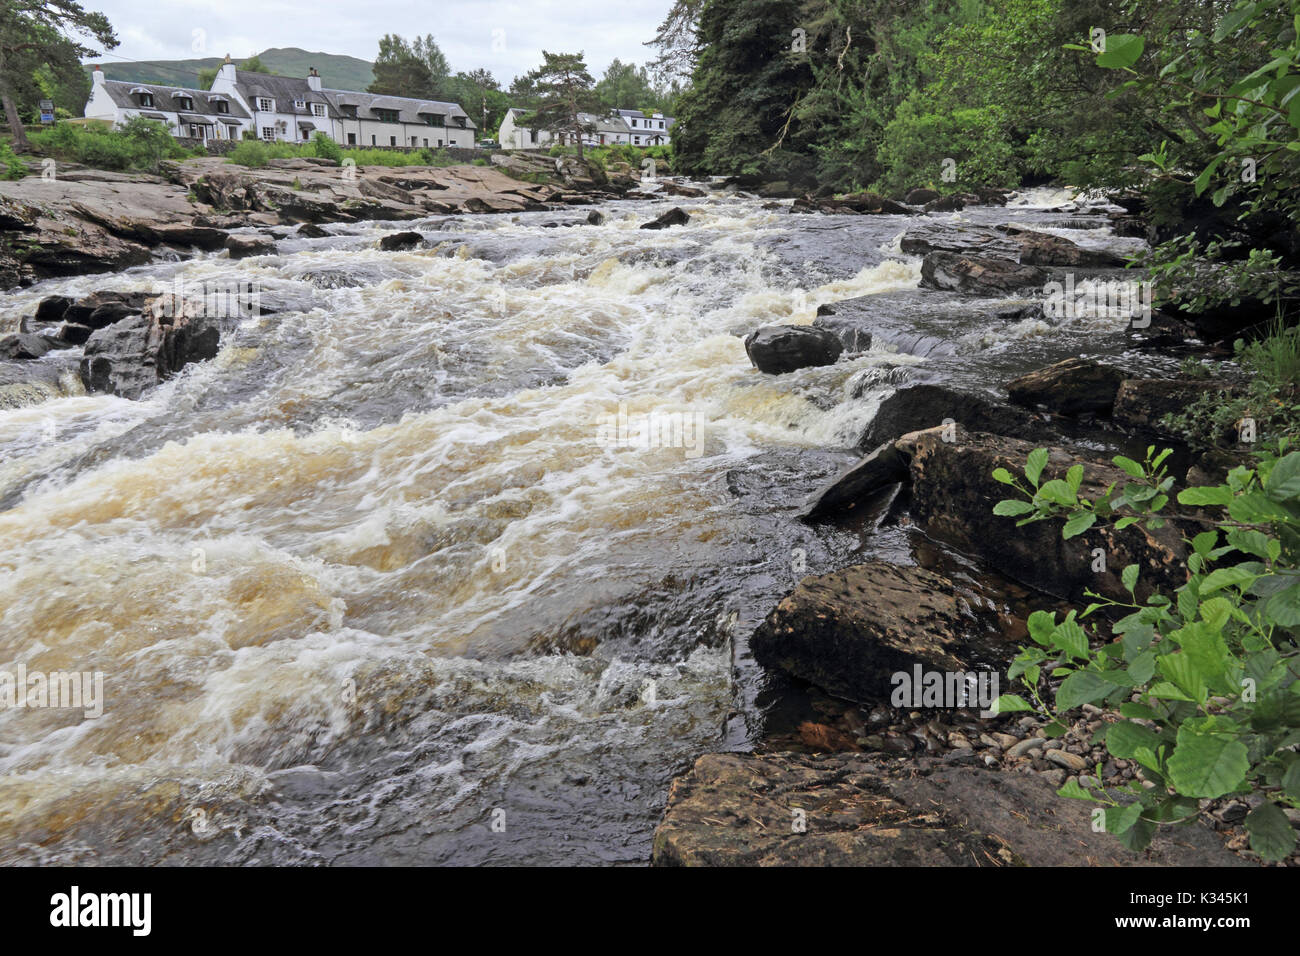 Falls of Dochart, Killin, Scotland Stock Photo